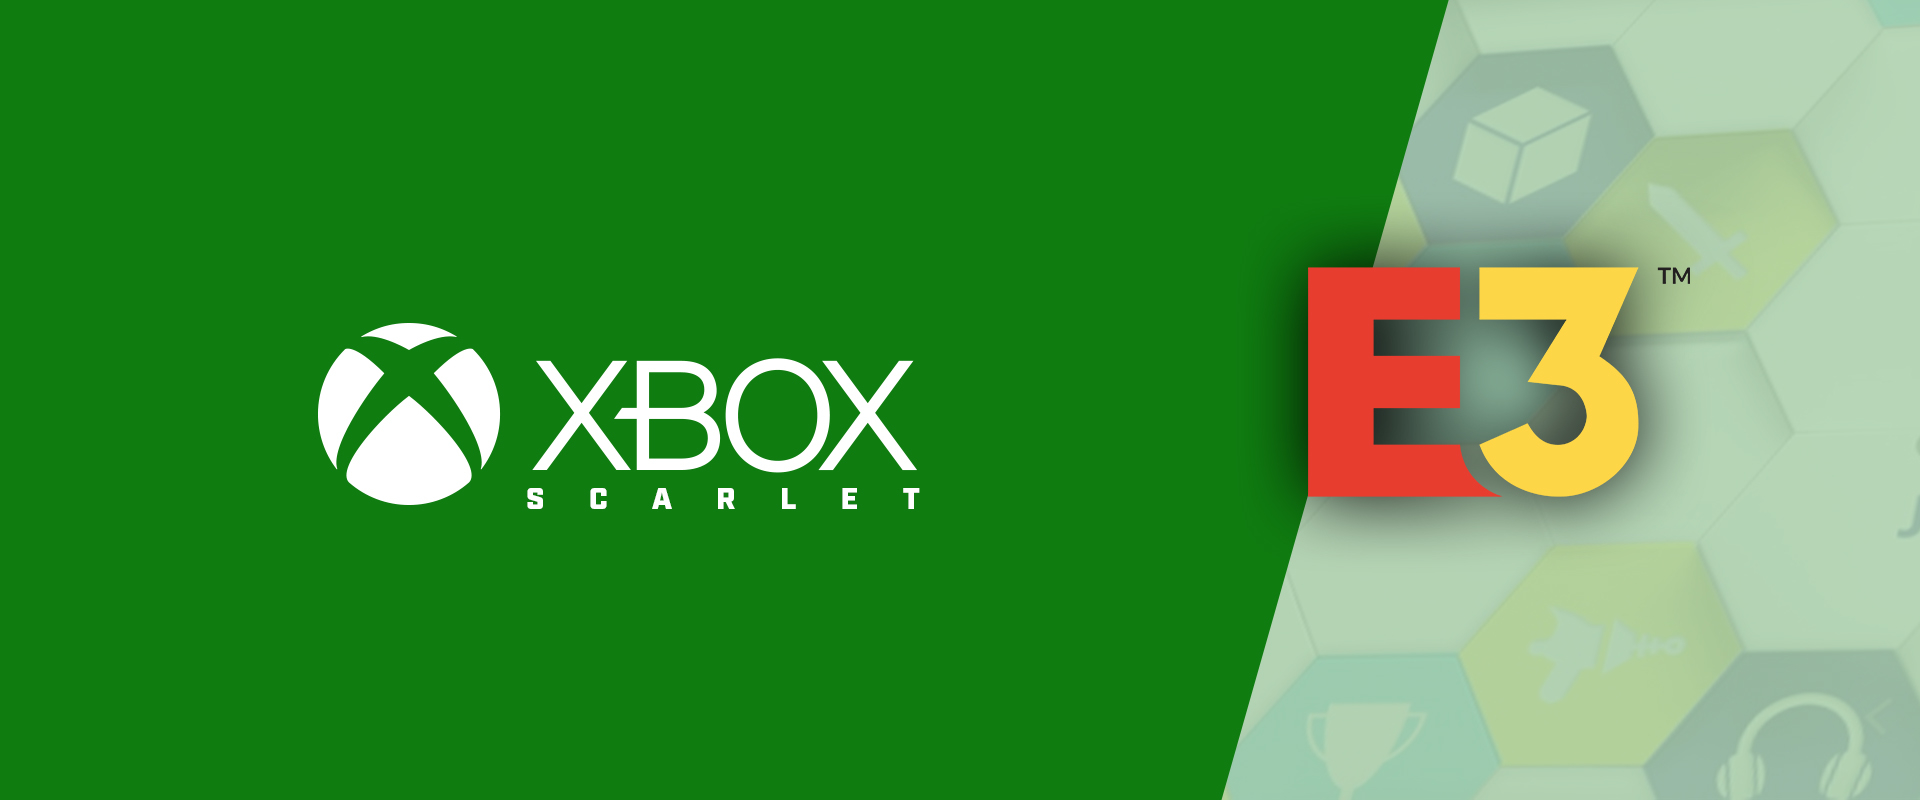 Készülőben a következő Xbox, a kódneve Scarlet